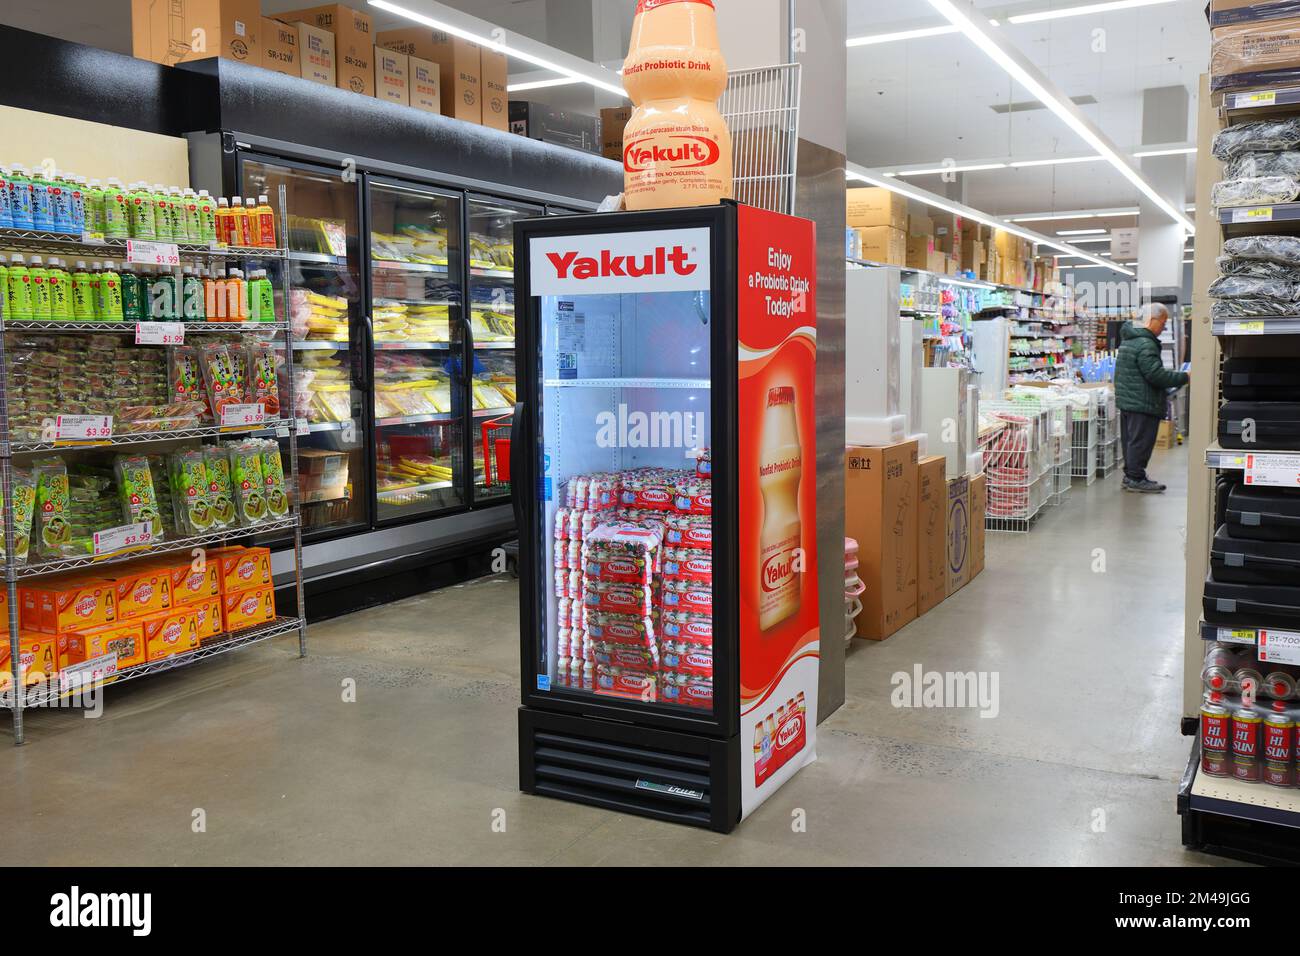 Un mini frigorifero rifornito con yogurt probiotico Yakult in un supermercato asiatico. Foto Stock